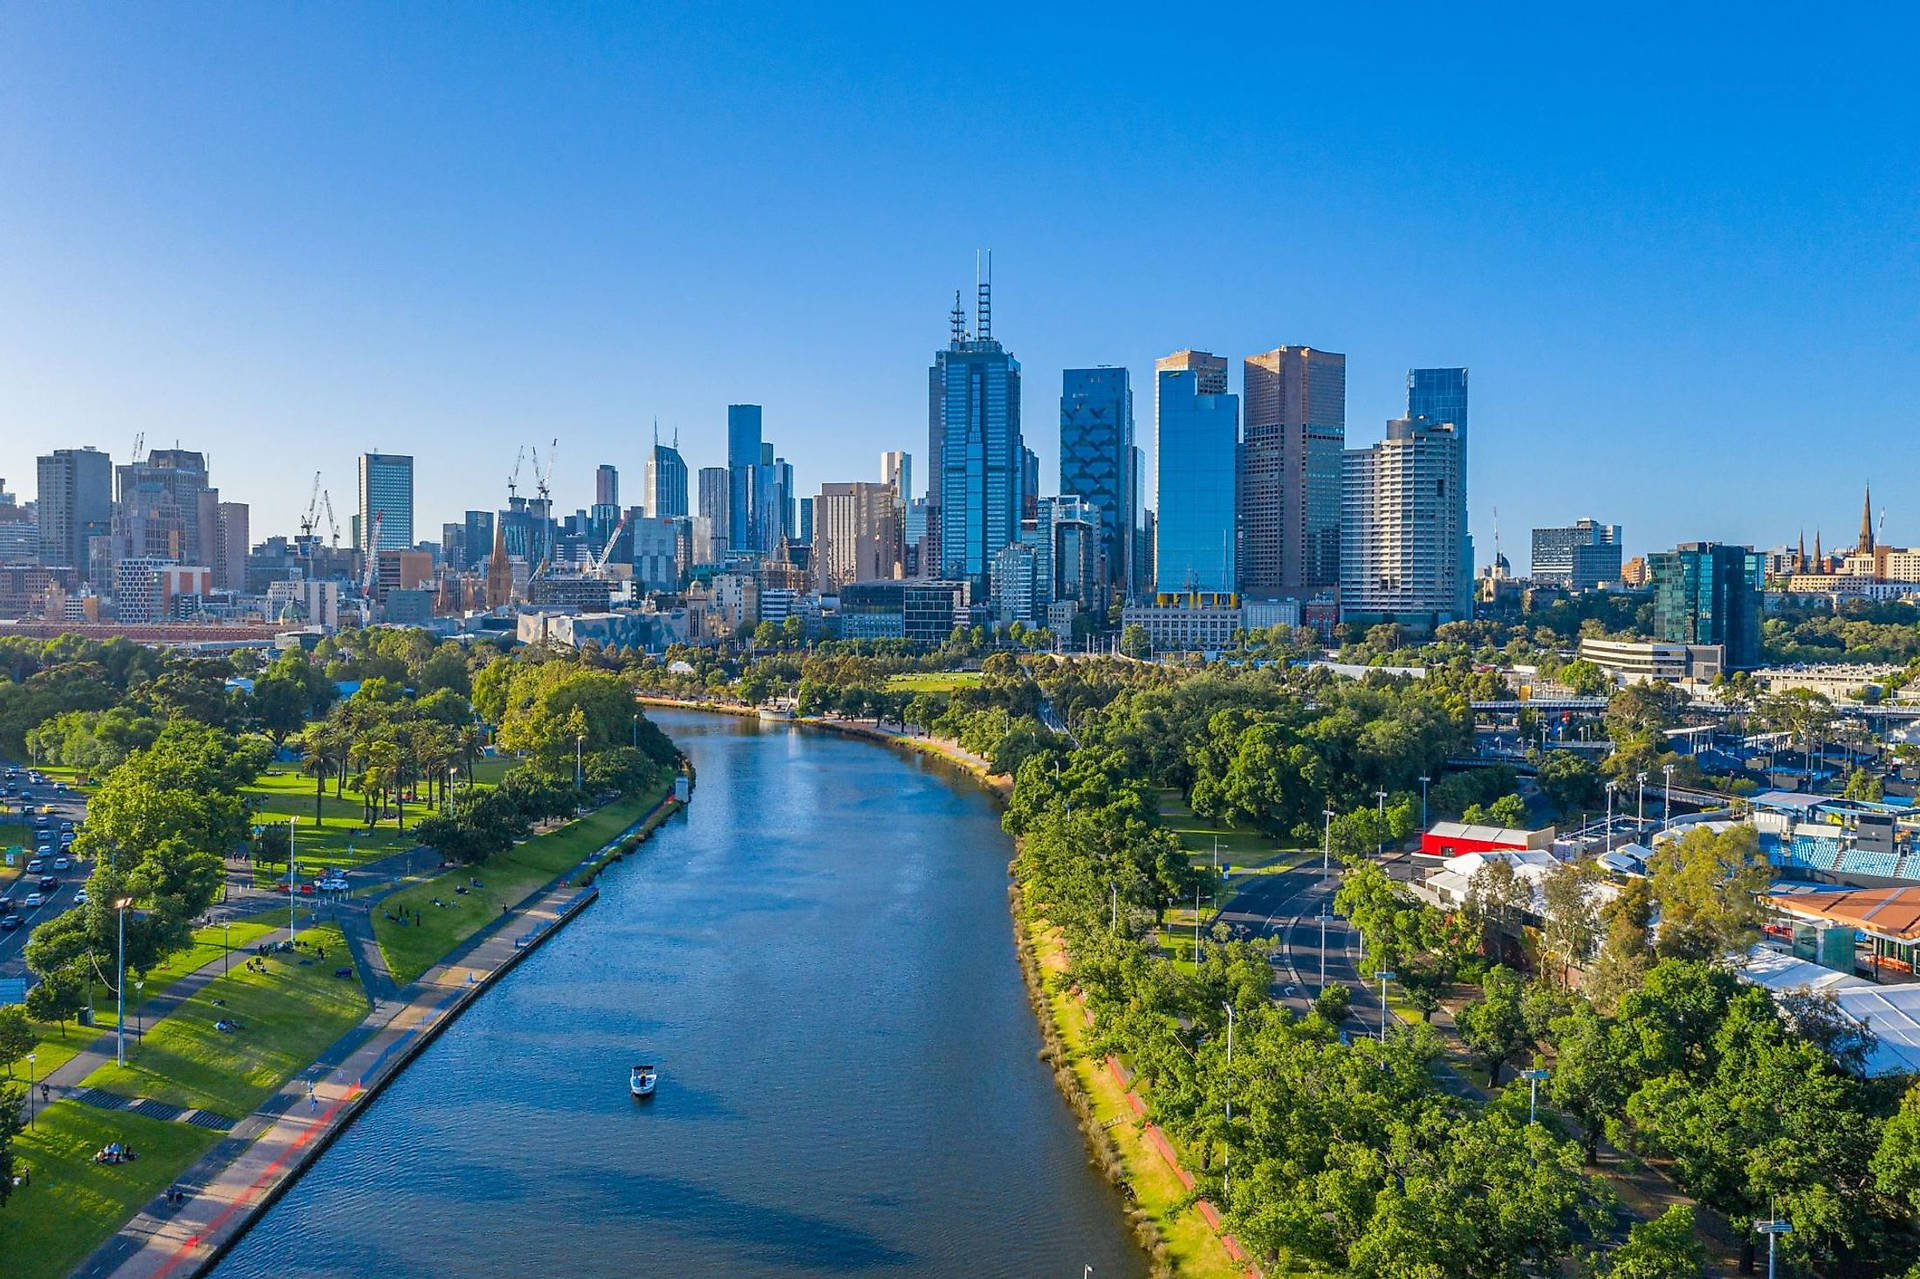 Melbourne Yarra River Wallpaper